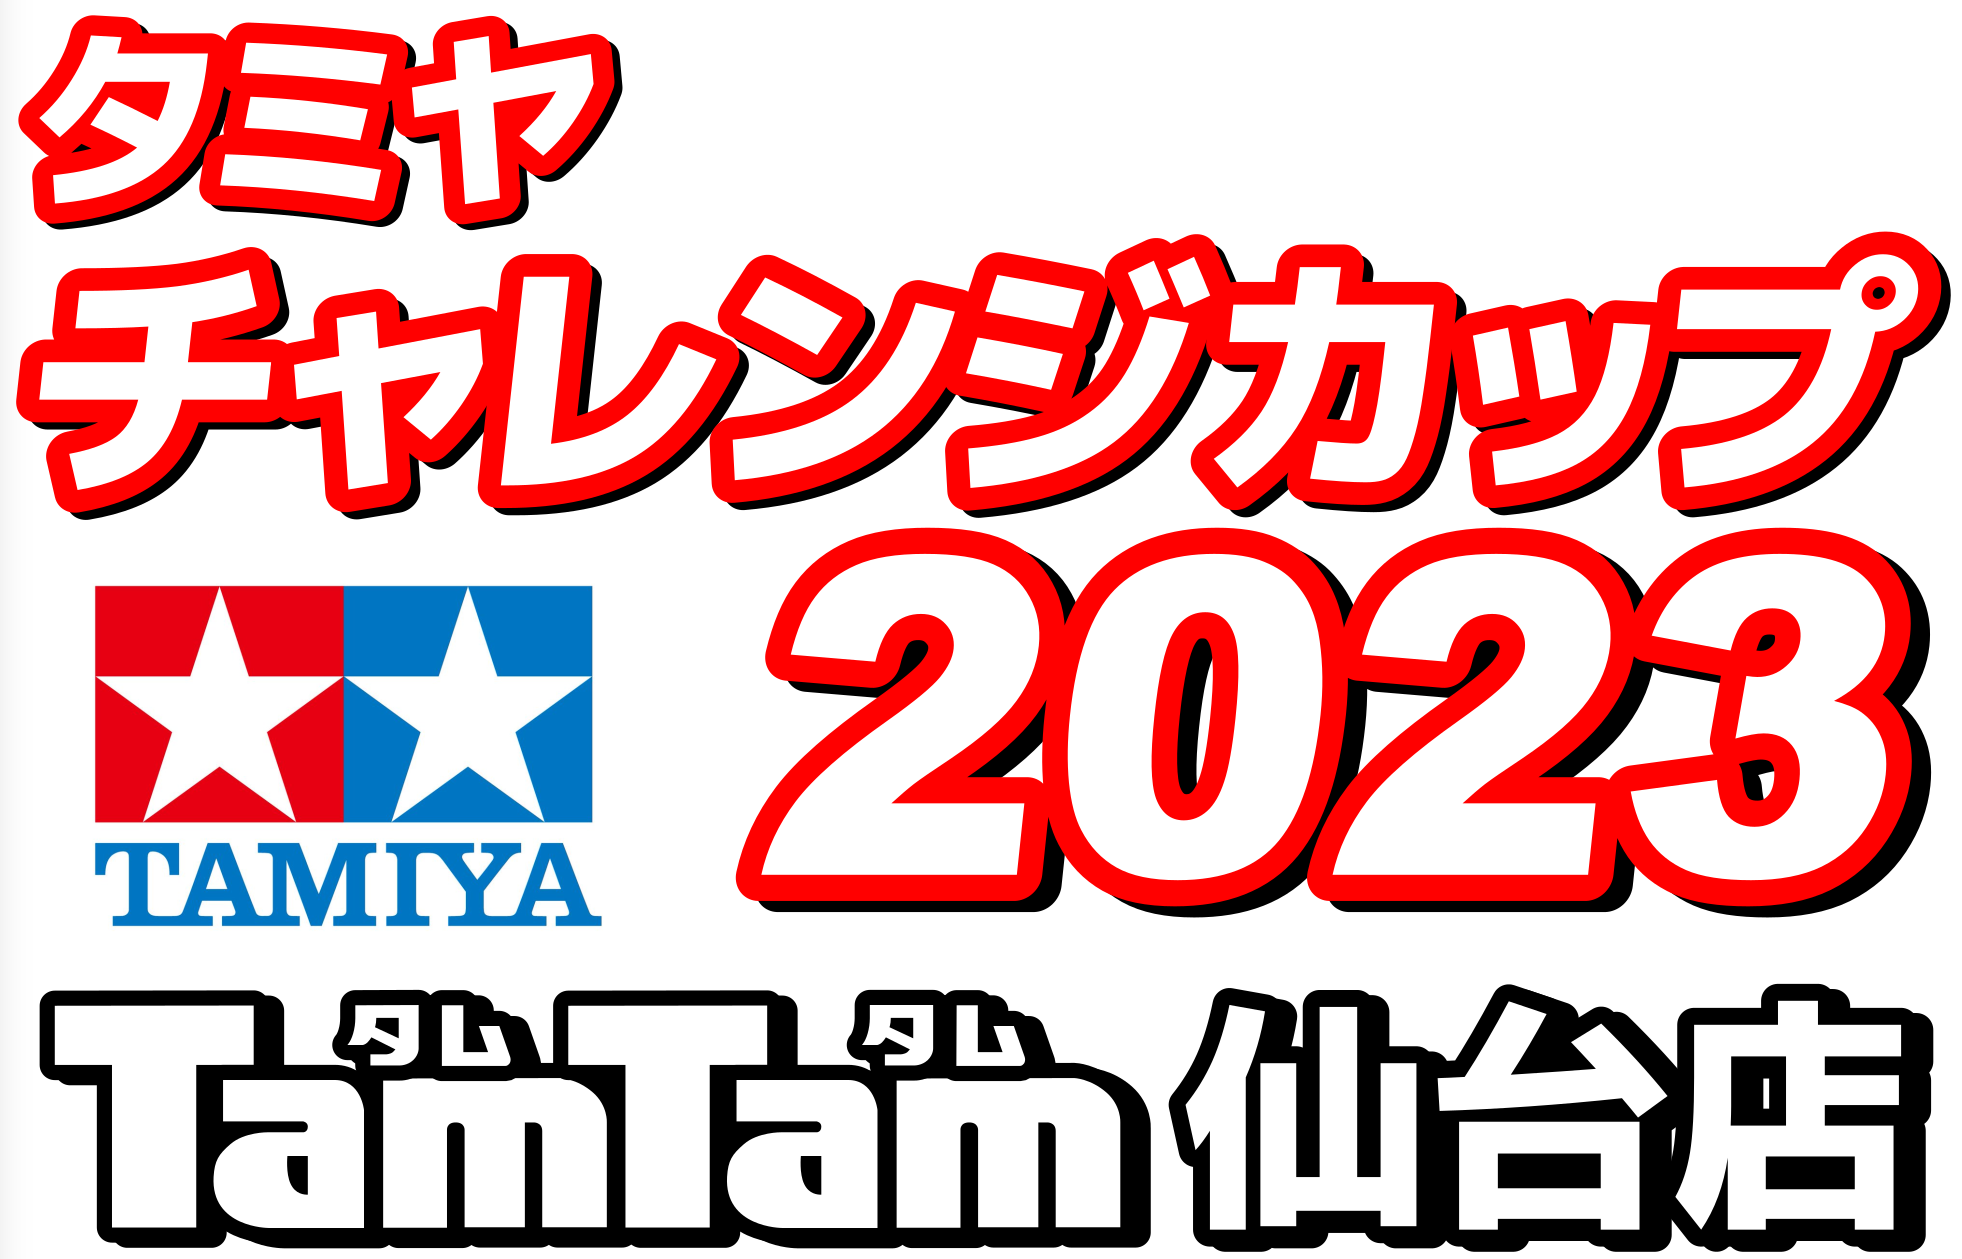 〈RC/レースイベント〉9/17 タミヤチャレンジカップ 2023開催のお知らせ